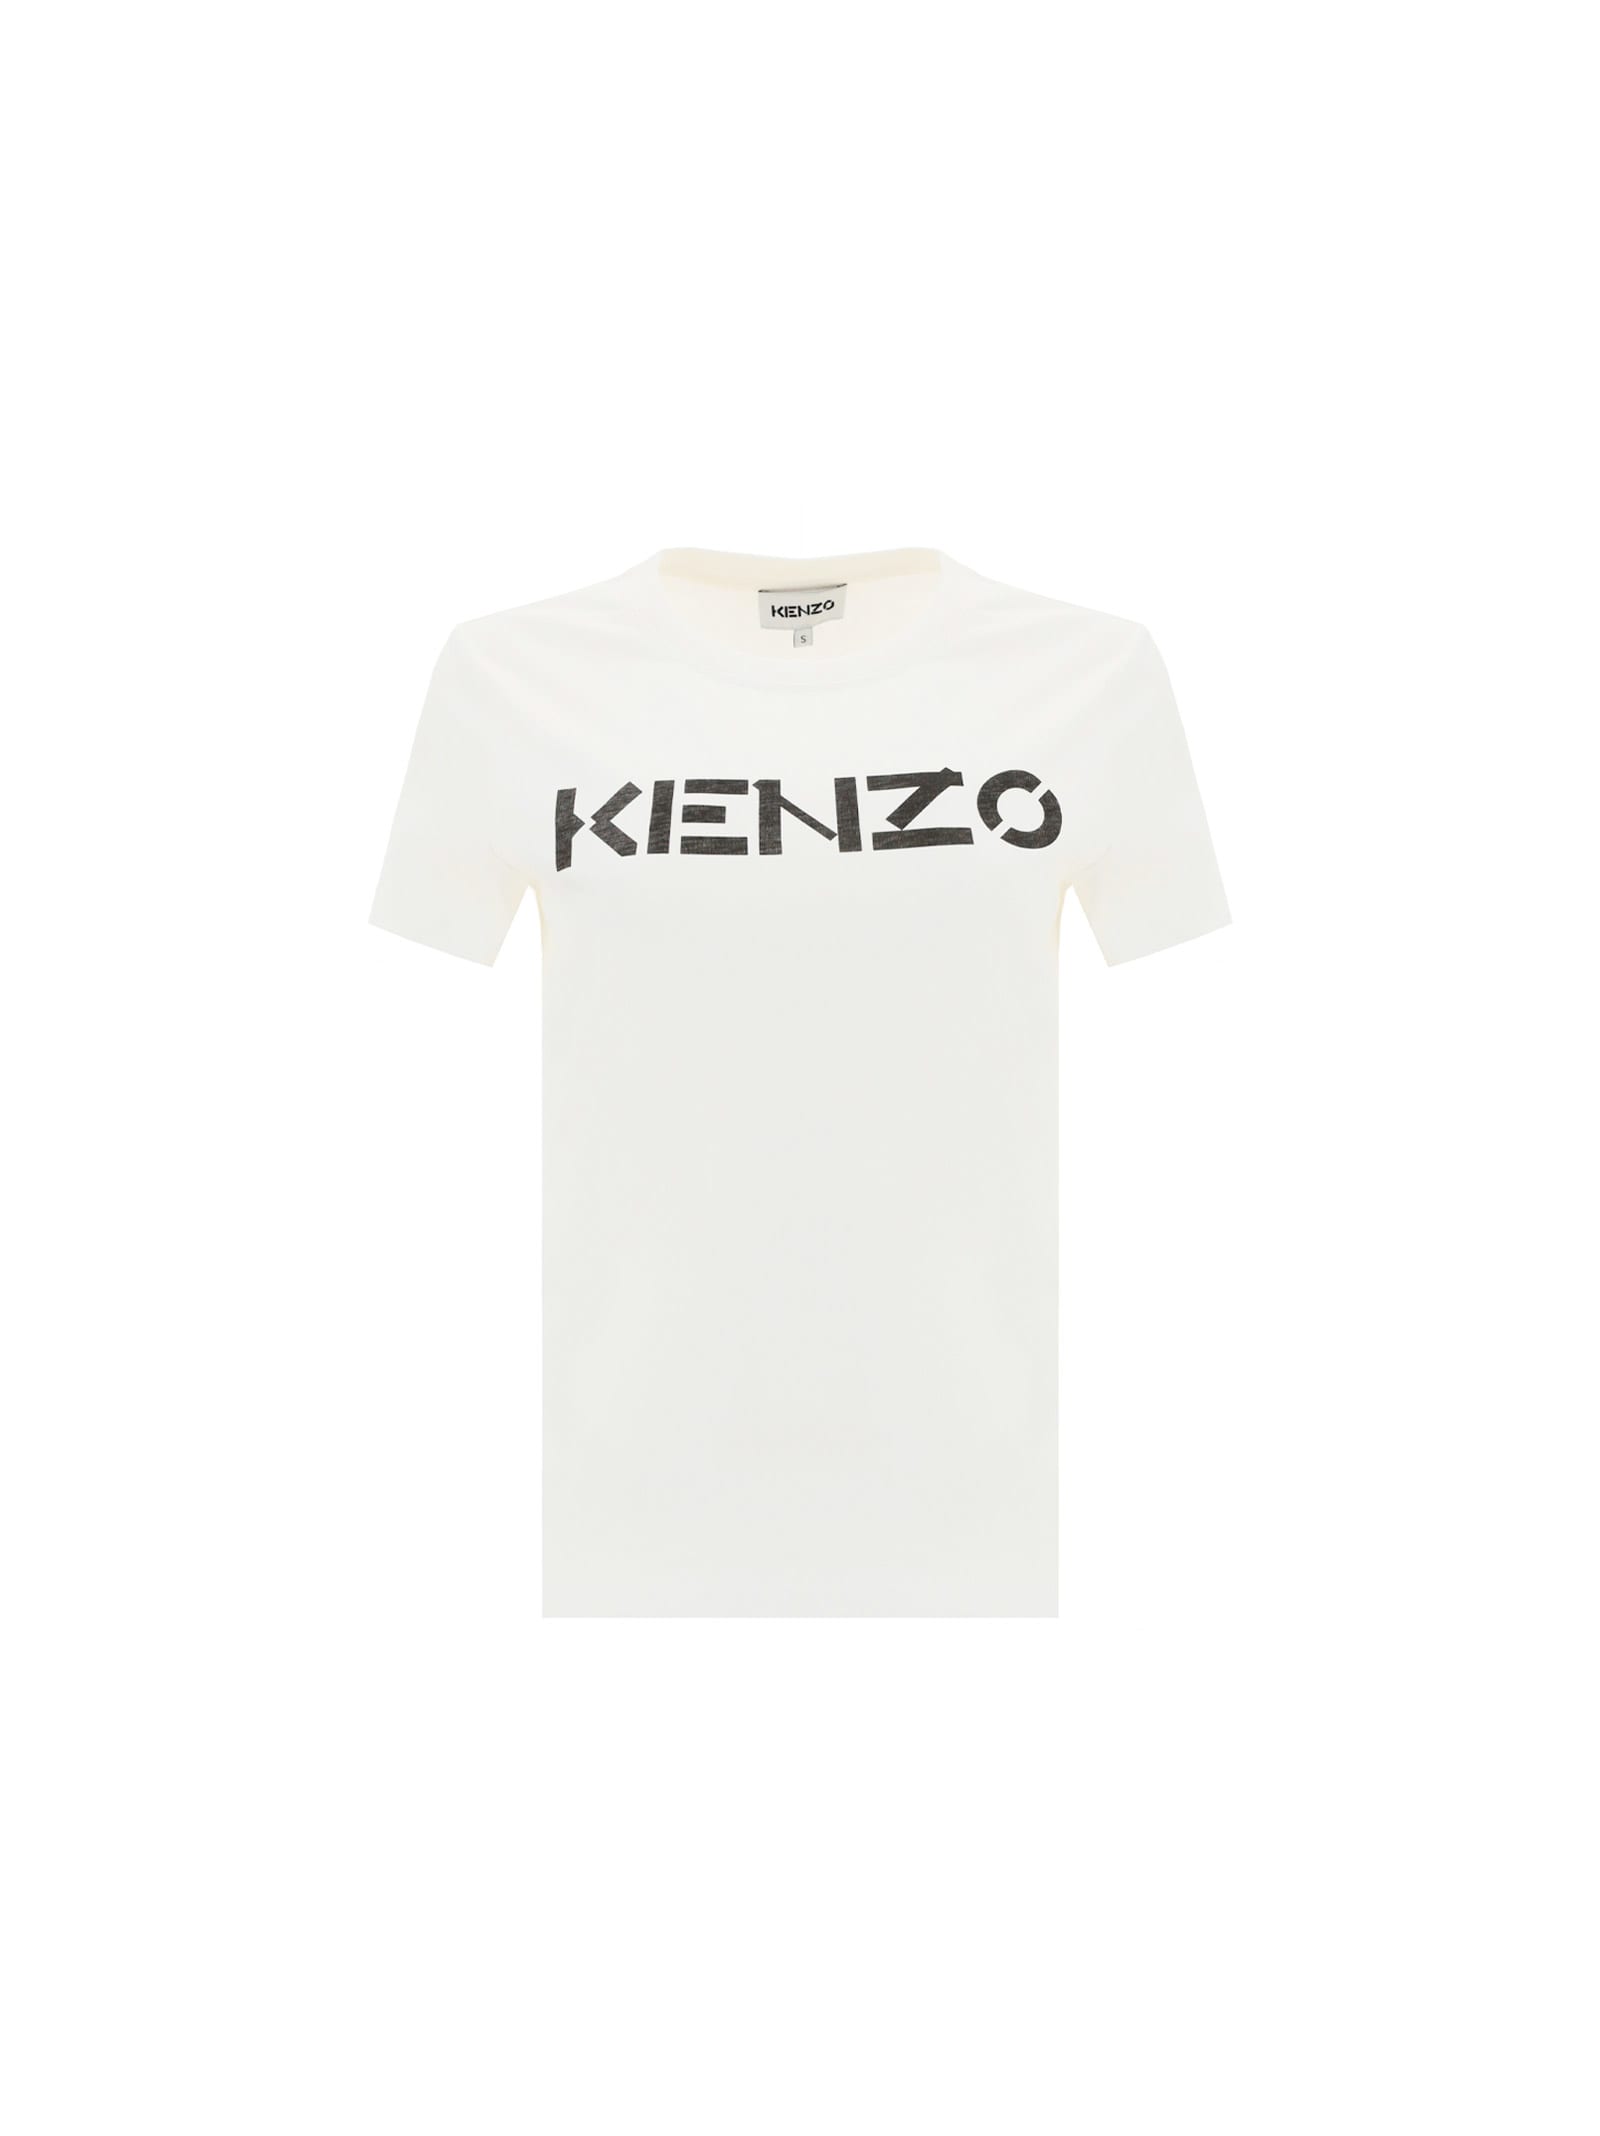 KENZO T-SHIRT,FB62TS8414SA 01B